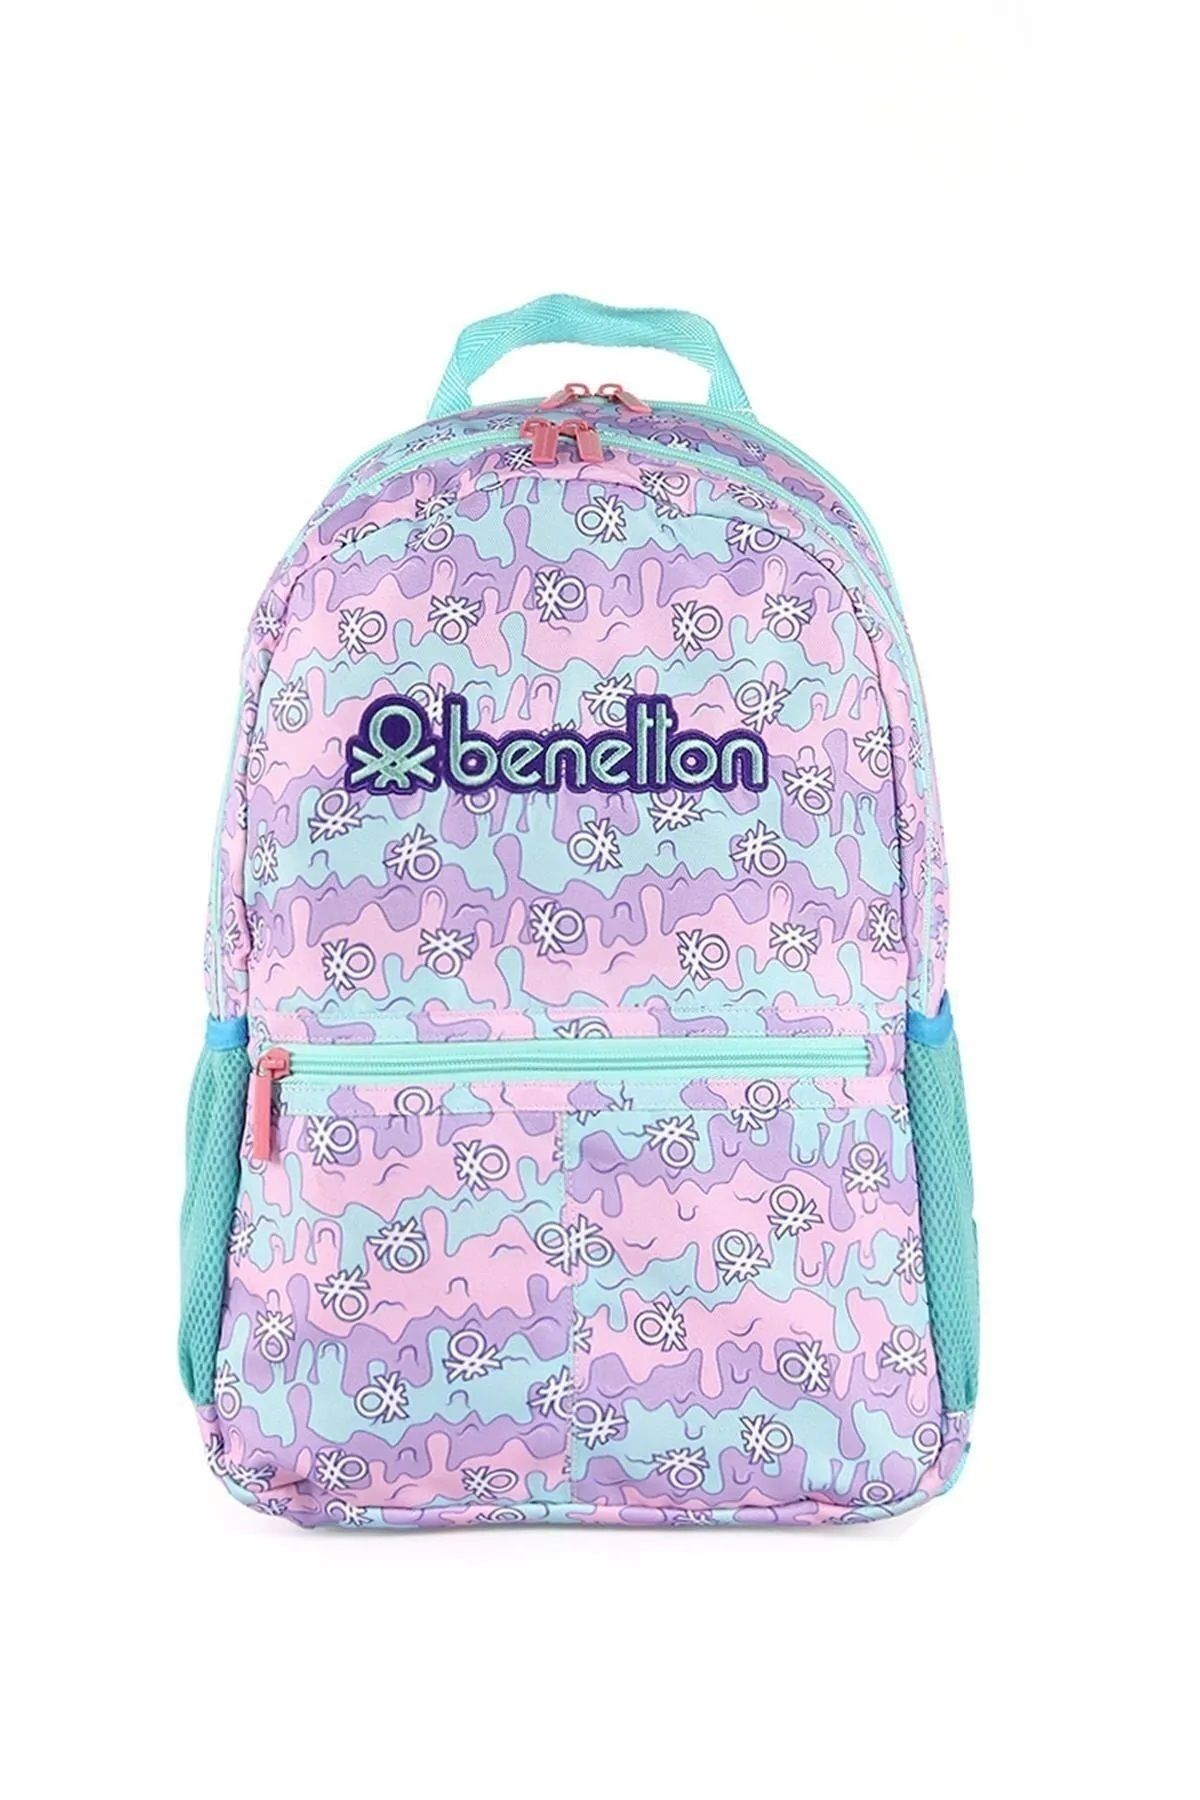 United Colors of Benetton 03667 Okul çantası ortaokul lise ilkokul öğrenci çantası Kız PEMBE